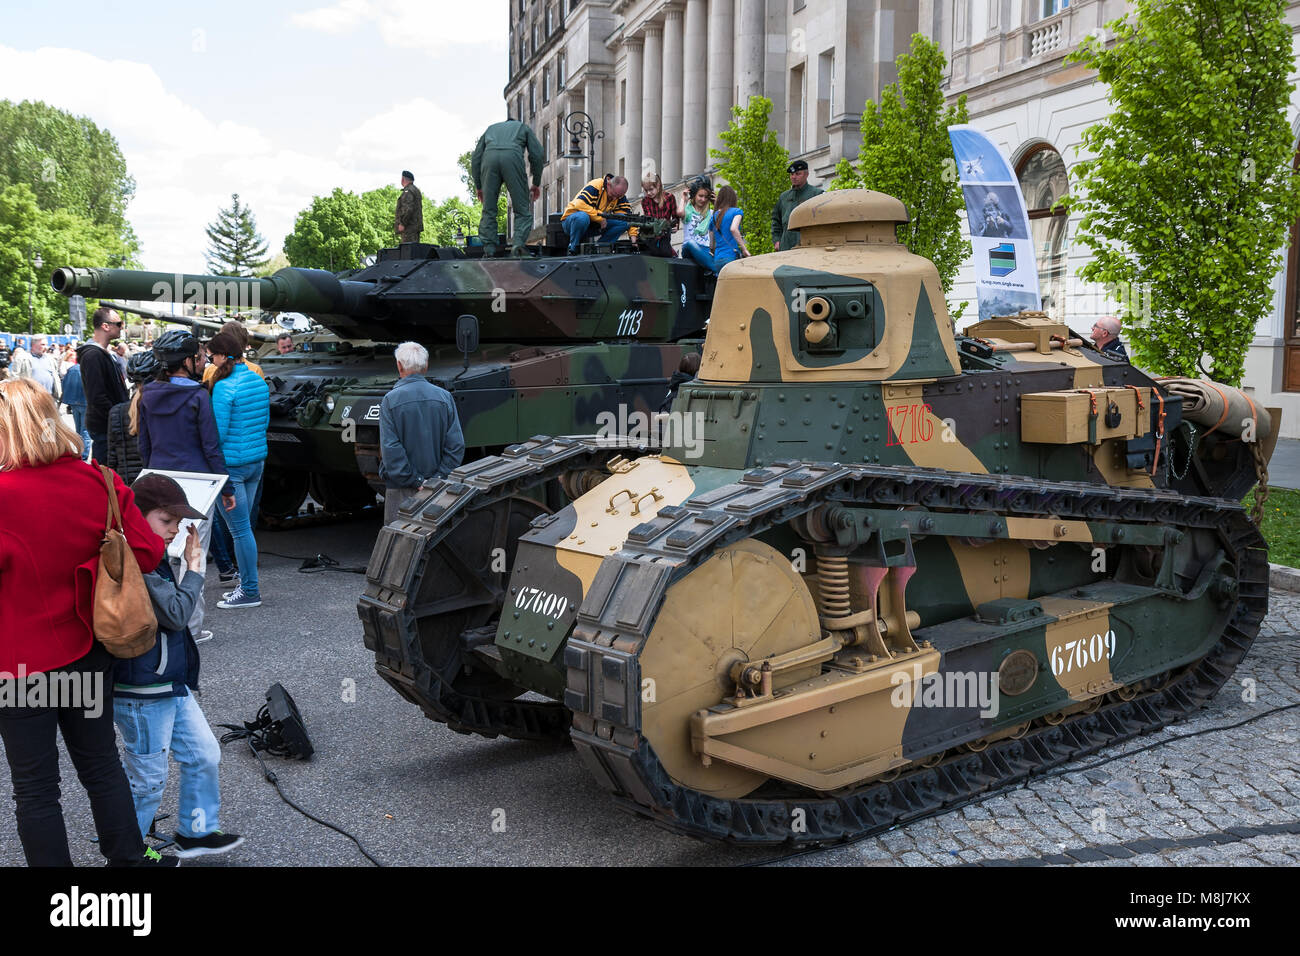 Varsovie, Pologne - Mai 08, 2015 : Renault FT 17 char léger, utilisé principalement pendant la Première Guerre mondiale. Des célébrations publiques du 70e anniversaire de la fin de la SECONDE GUERRE MONDIALE Banque D'Images